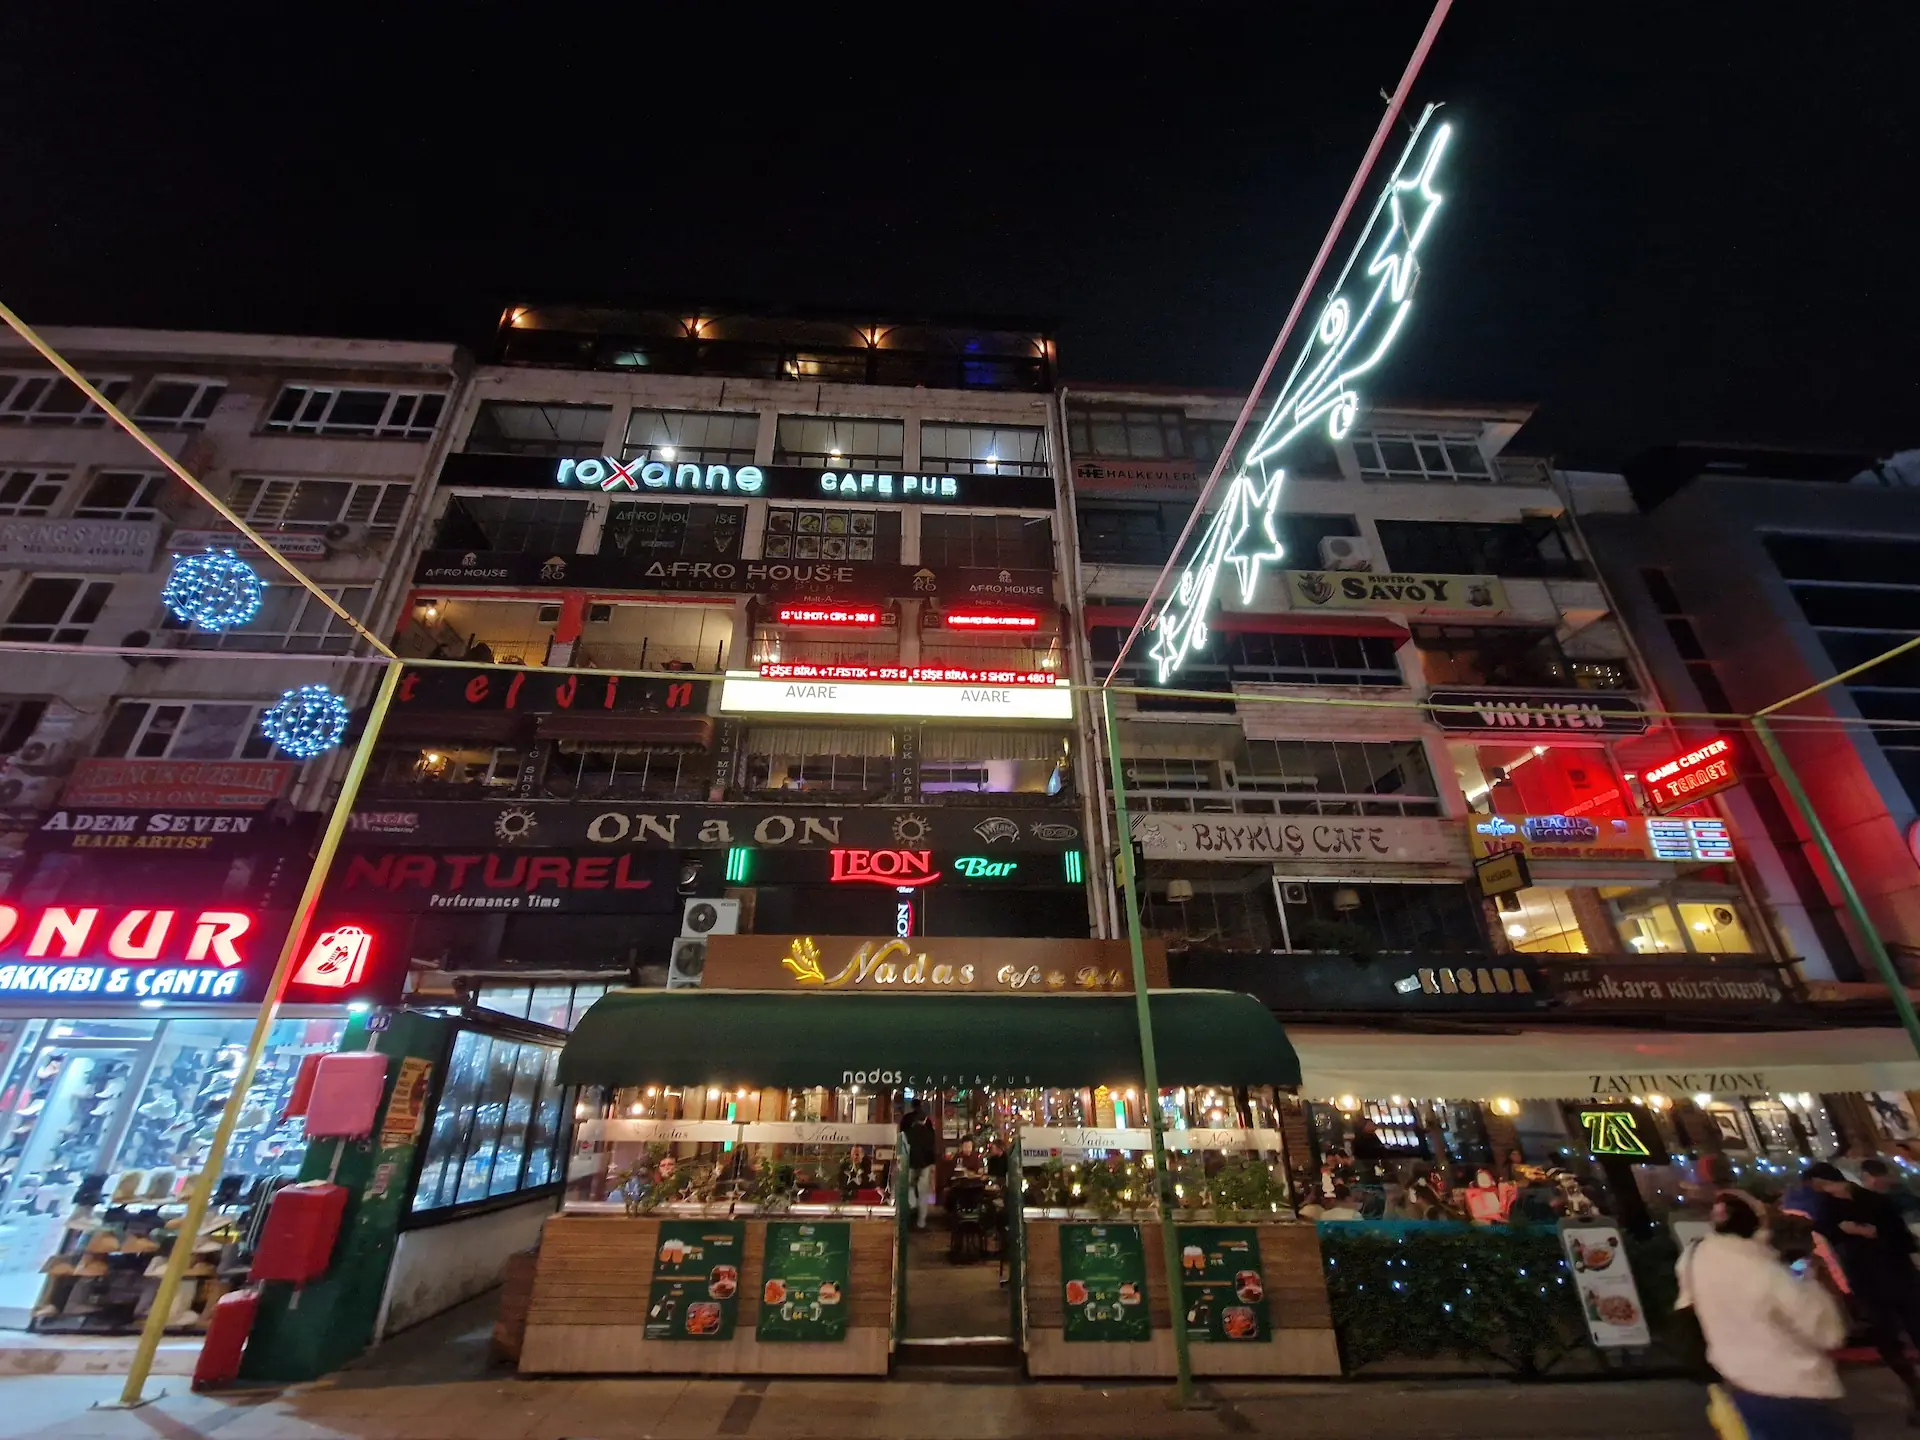 De nuit, un bâtiment illuminé de néons de toutes les couleurs. Les noms de différents magasin, restaurants, cafés, etc. s'entassent sur plusieurs étages.